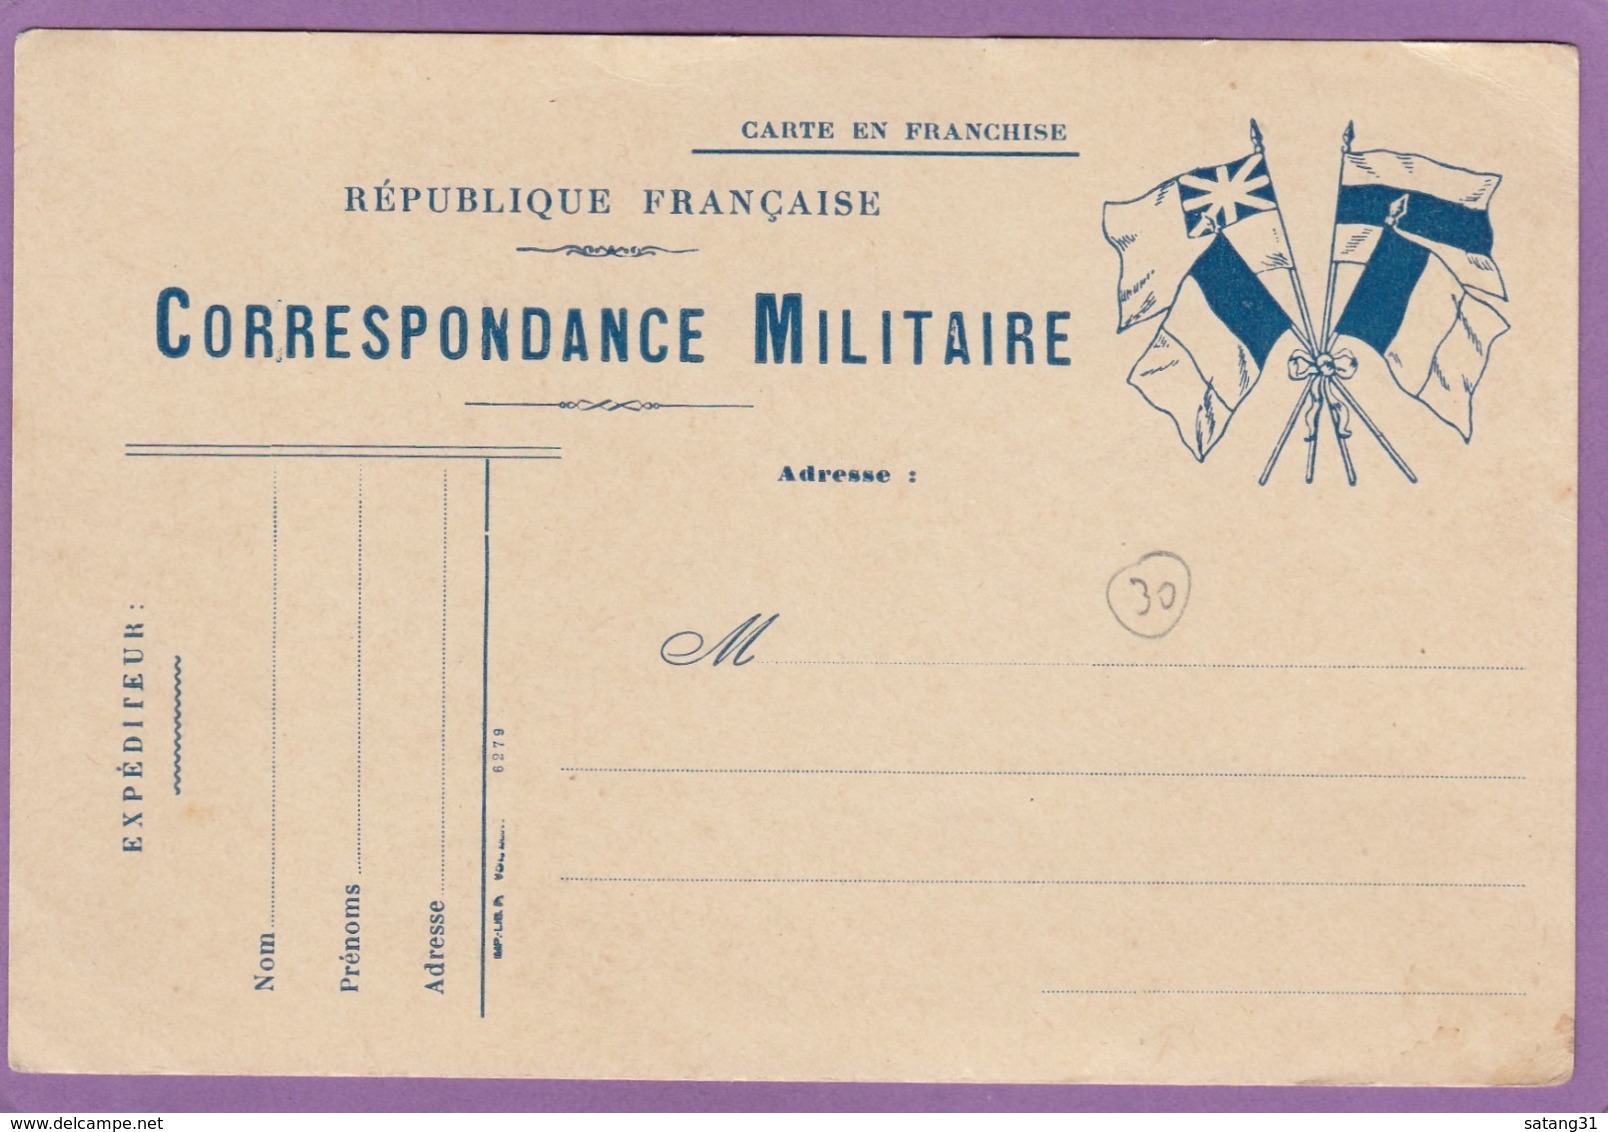 CARTE EN FRANCHISE,CORRESPONDANCE MILITAIRE, NEUVE. - Guerre De 1914-18